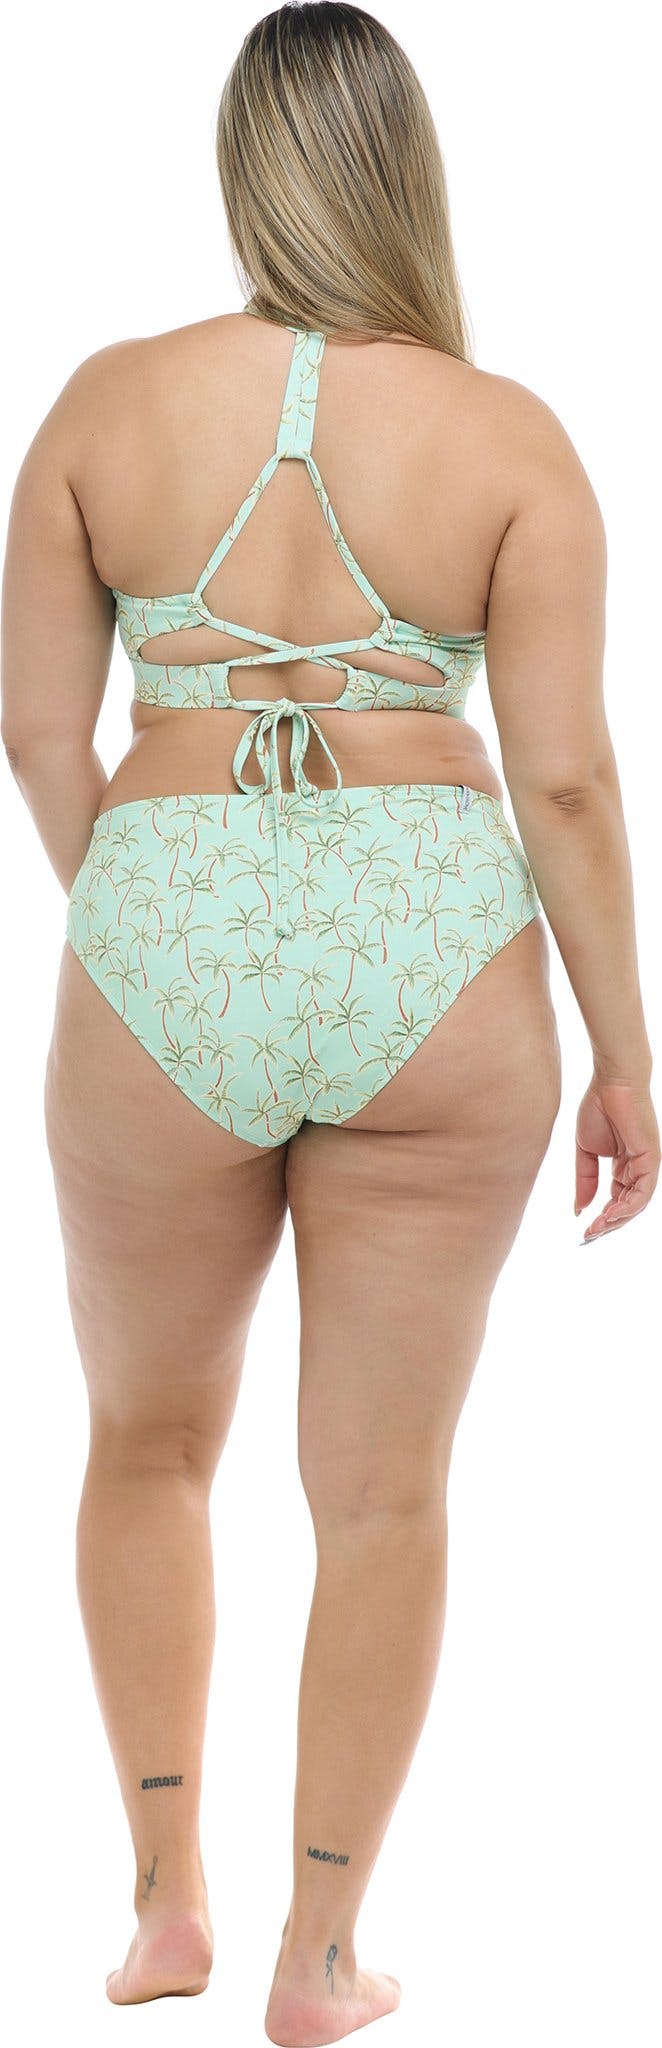 Numéro de l'image de la galerie de produits 2 pour le produit Bas de bikini grande taille Salt Cay Retro - Femme